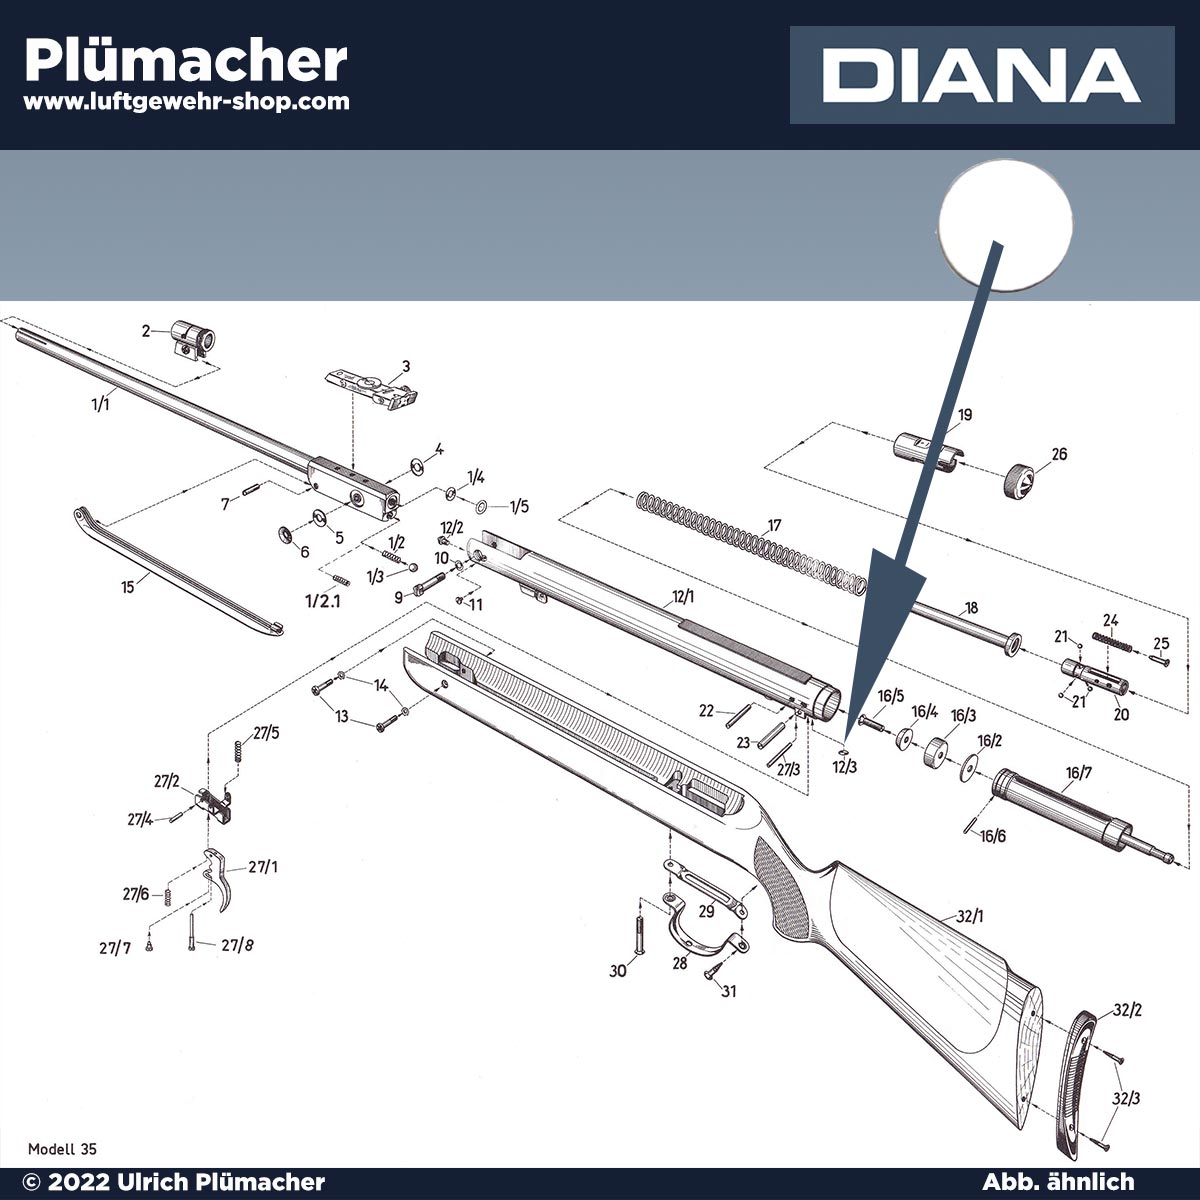 Diana 35-27 Laufdichtung - O-Ring 8 x 2,5 für Luftgewehre